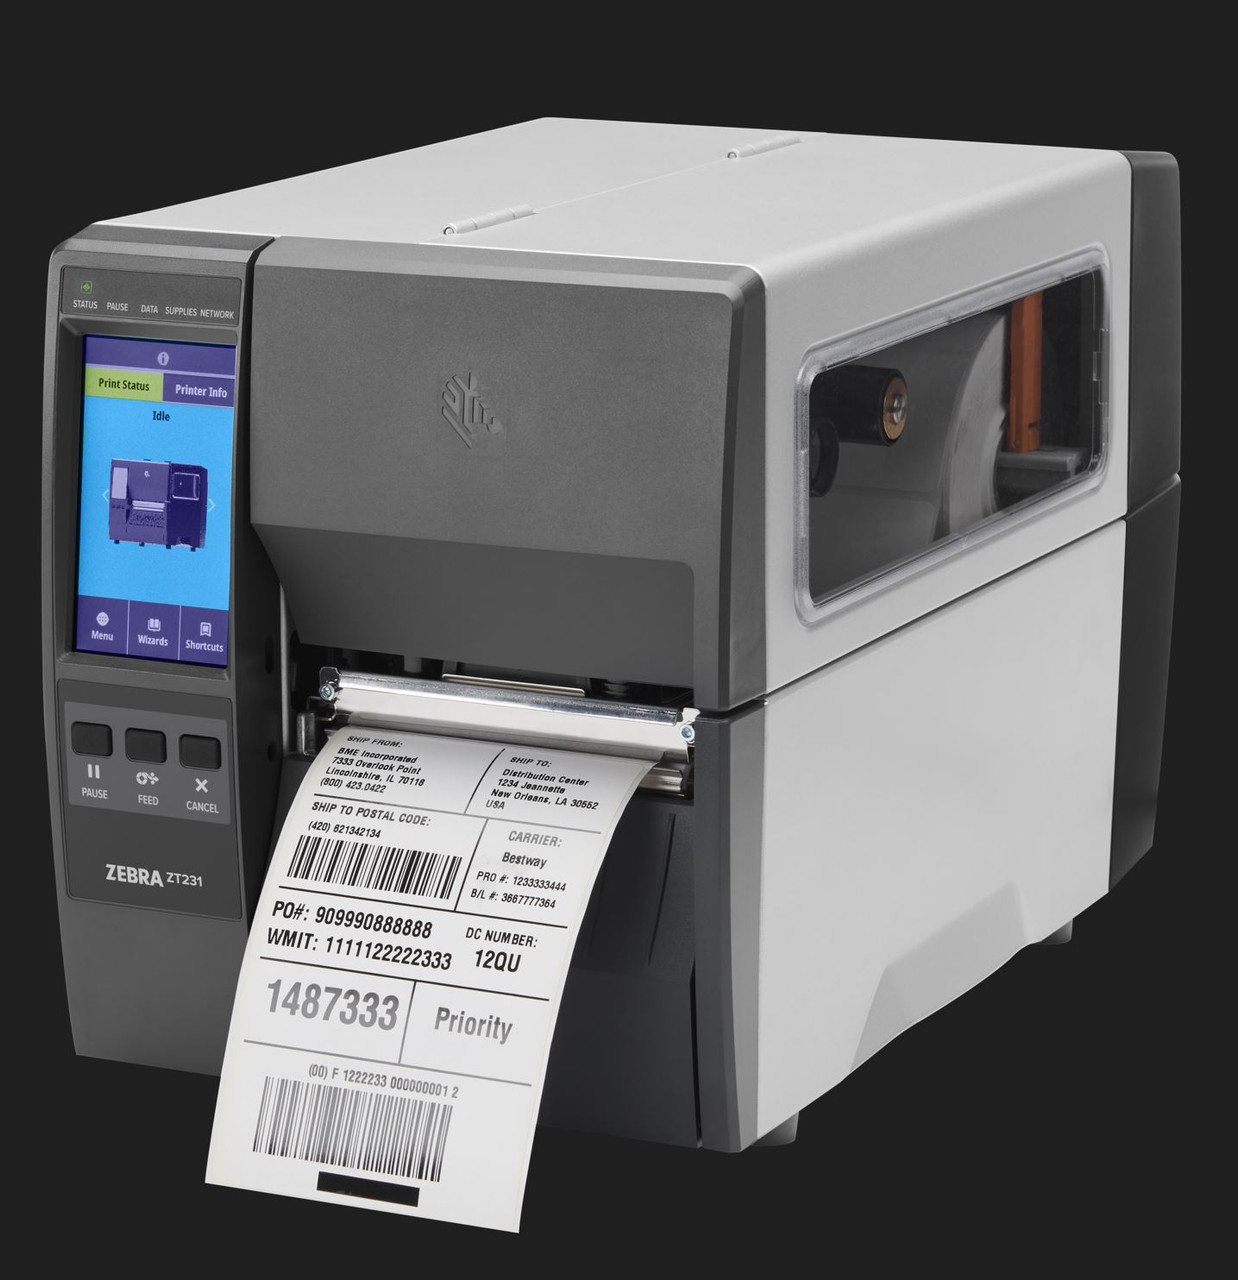 Zebra, Printer, ZD421, Thermal Transfer Printer (74/300M), 203 DPI, US